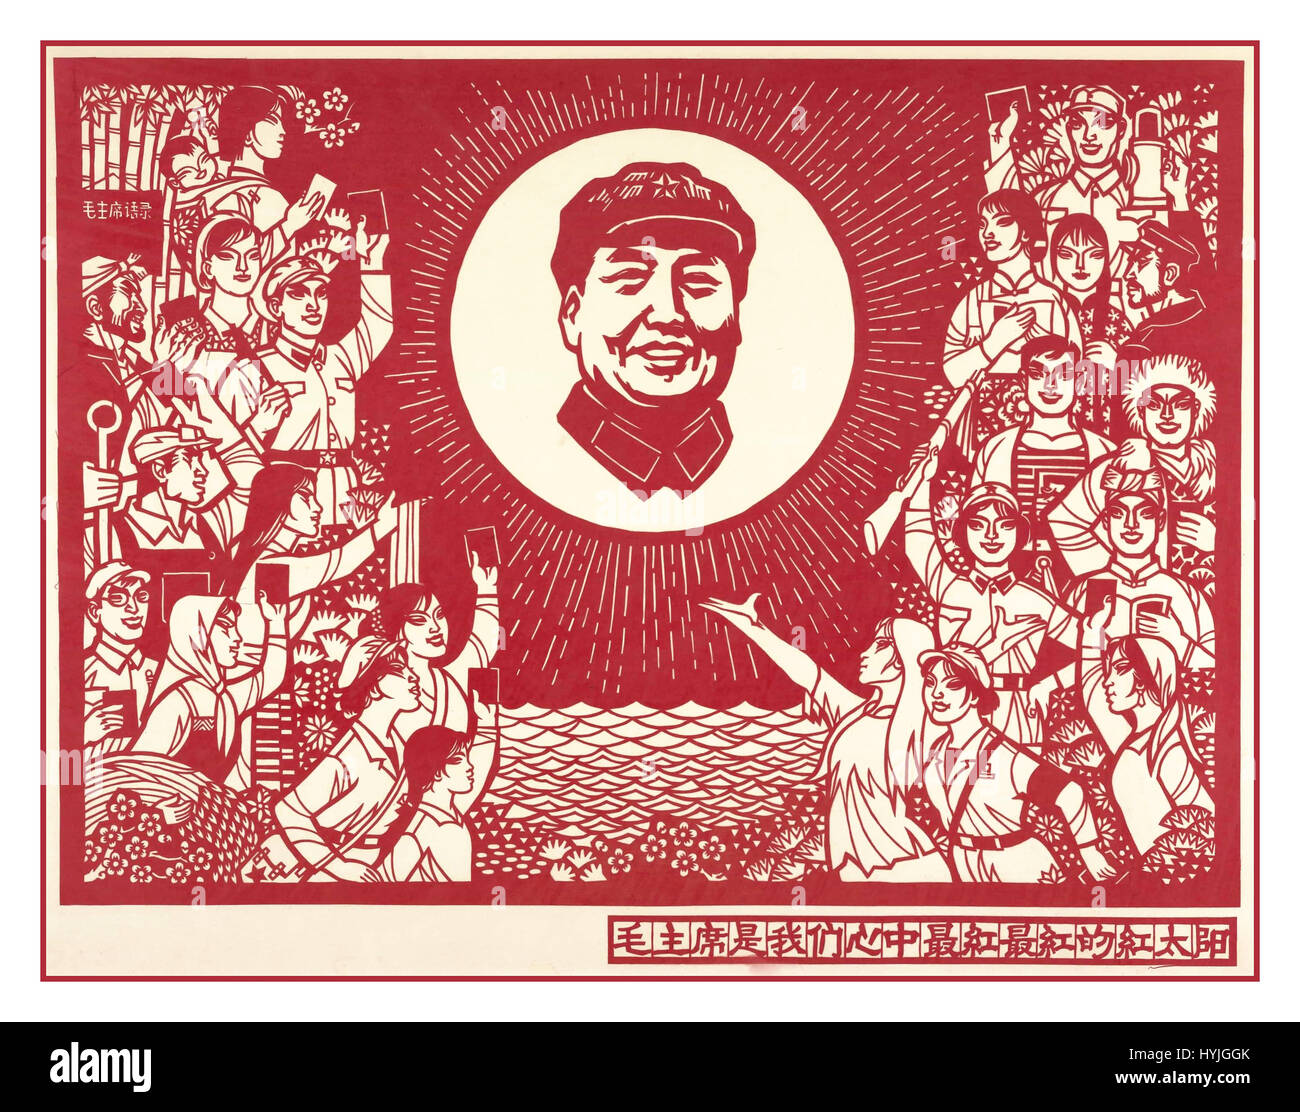 Classic vintage affiche de propagande chinoise intitulée 'Le président Mao est le Soleil, Reddest Reddest dans notre coeur" 1967. Banque D'Images